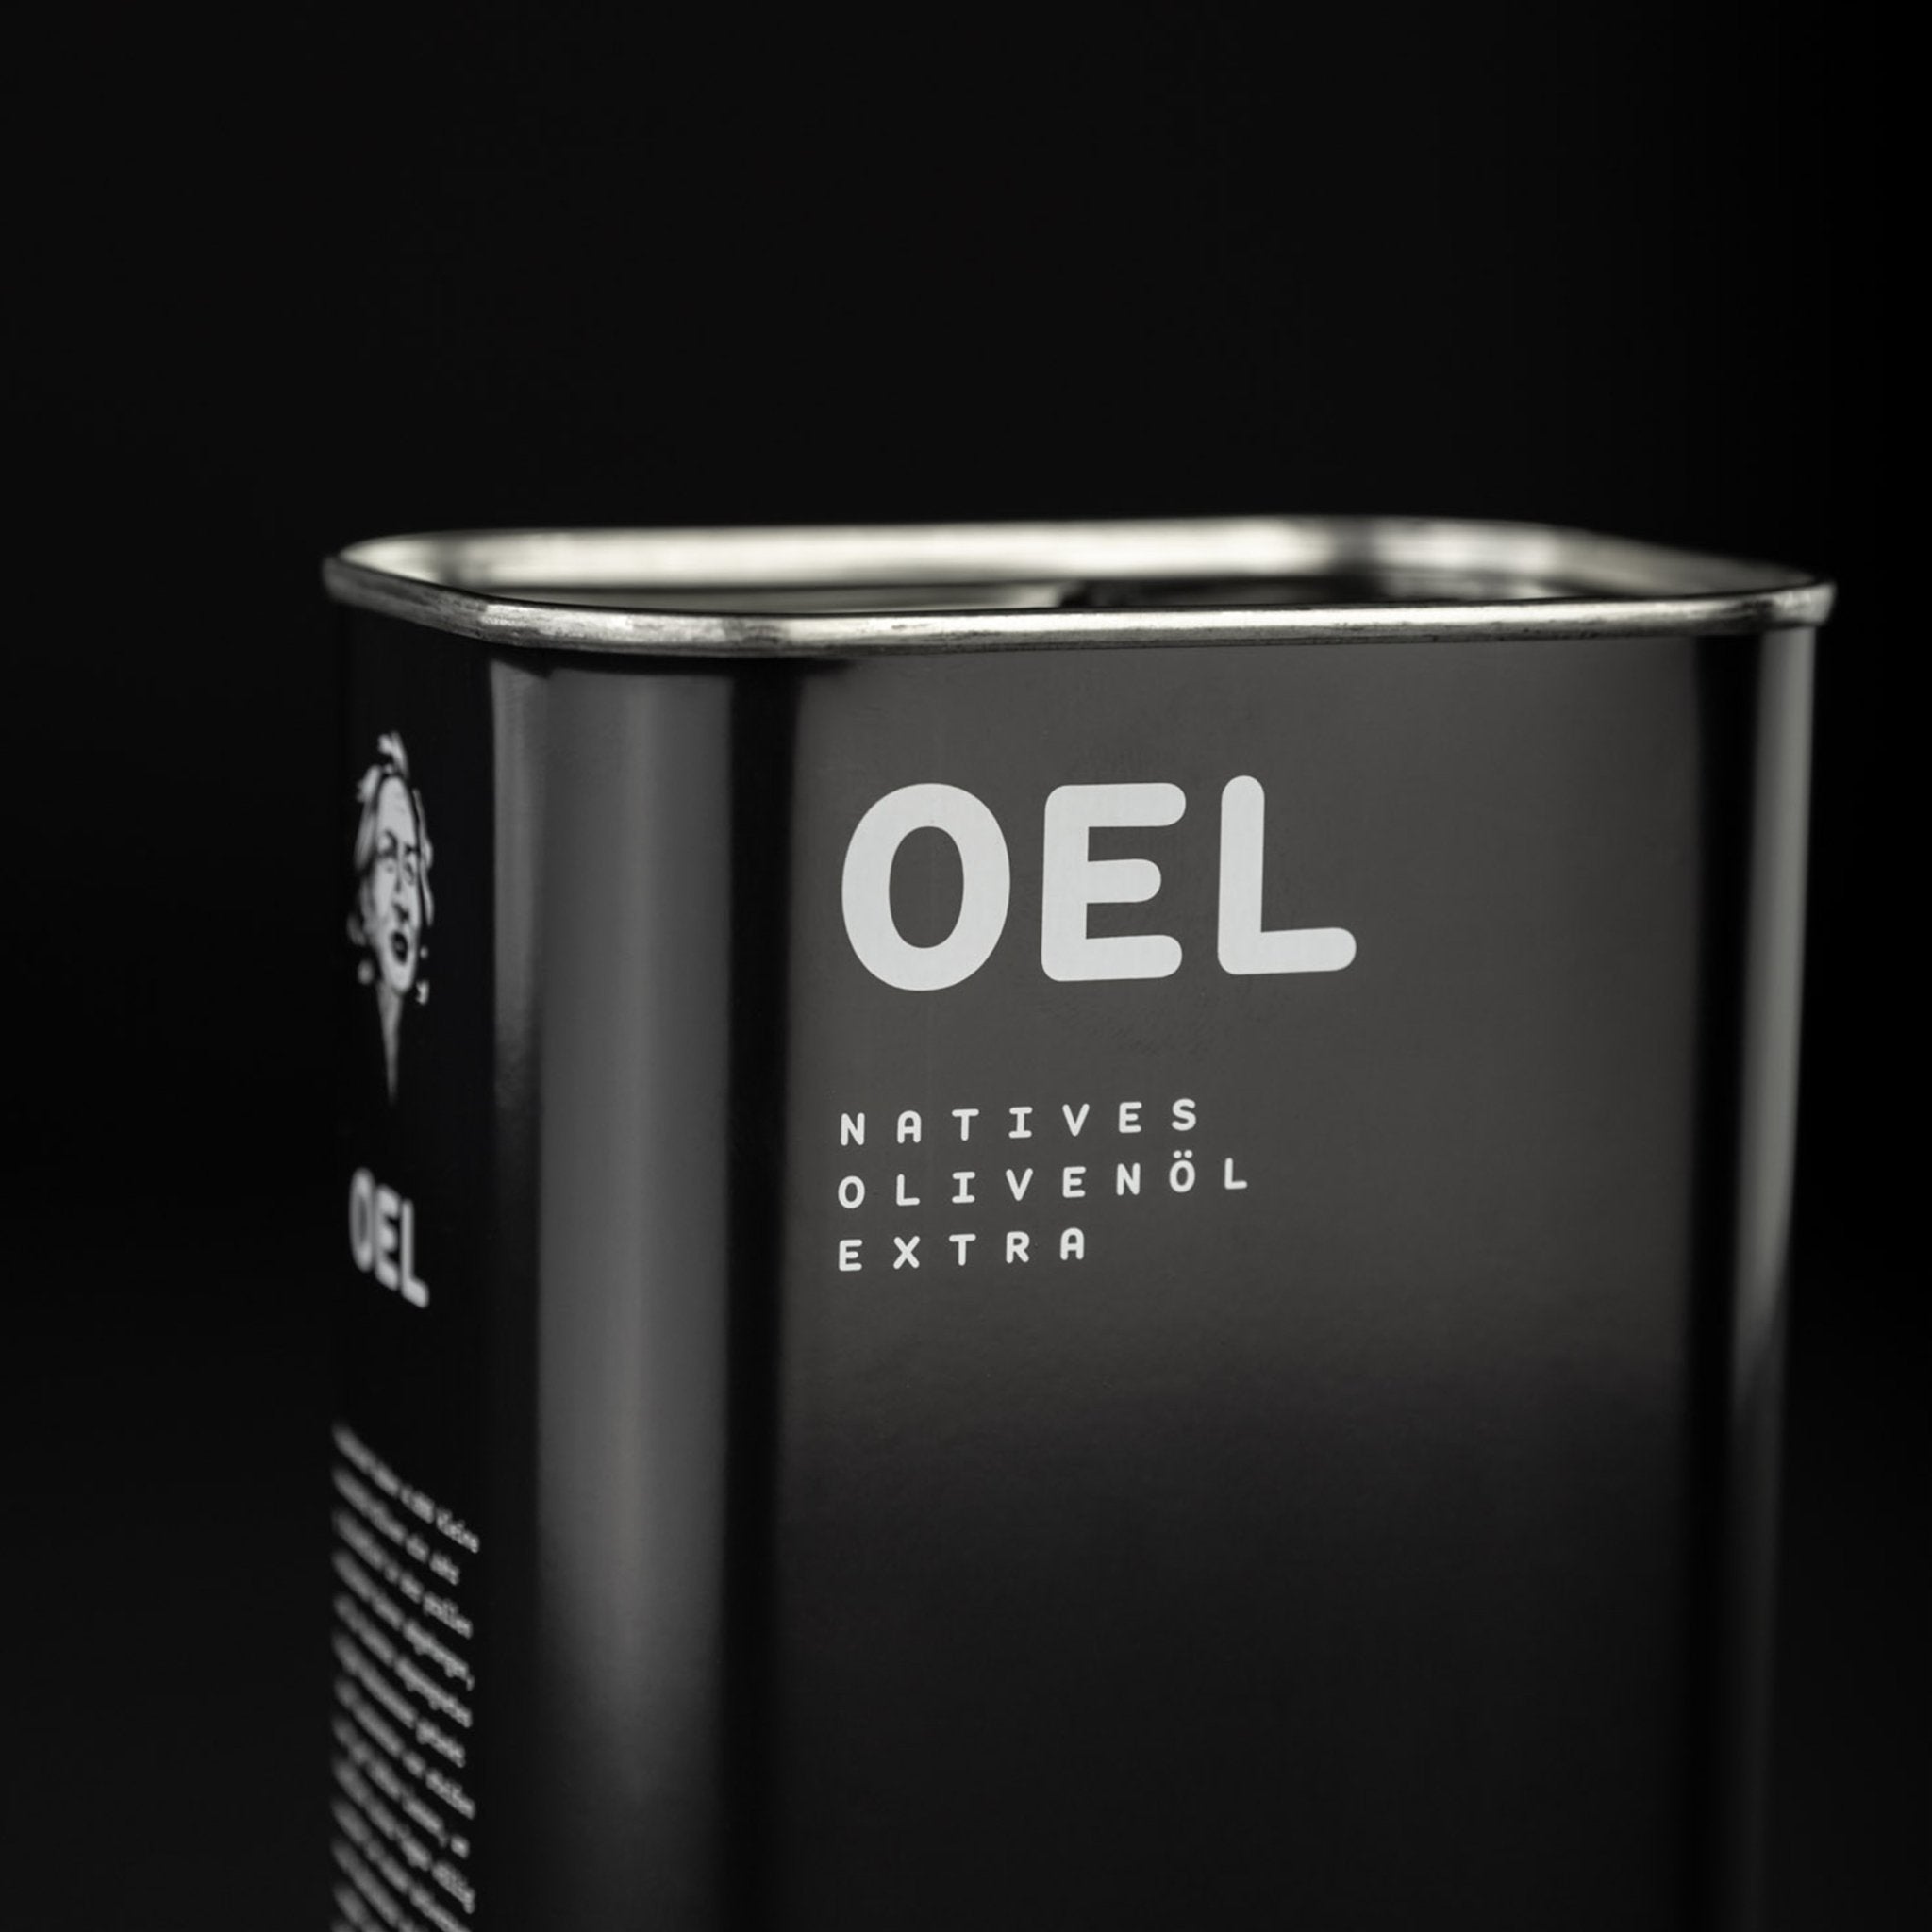 OEL 5.000 ml - Bio Natives Olivenöl Extra aus Griechenland - OEL - Griechische Produkte und Olivenöl - OEL Olivenprodukte